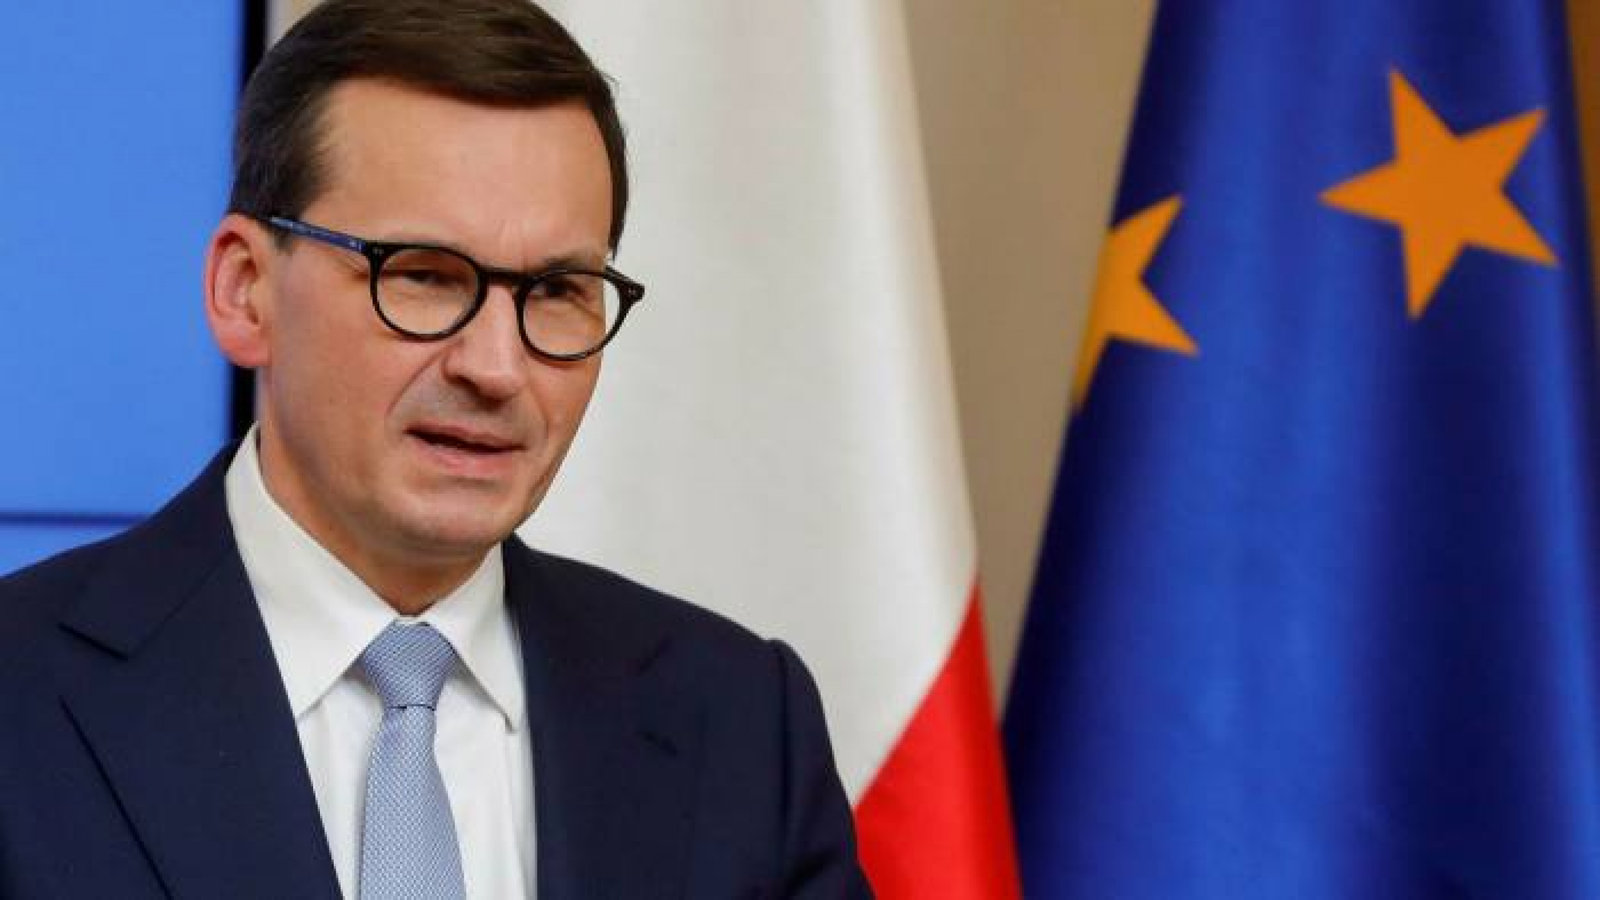 Morawiecki afirma que Polonia 'no sucumbirá al chantaje' de corte de gas ruso